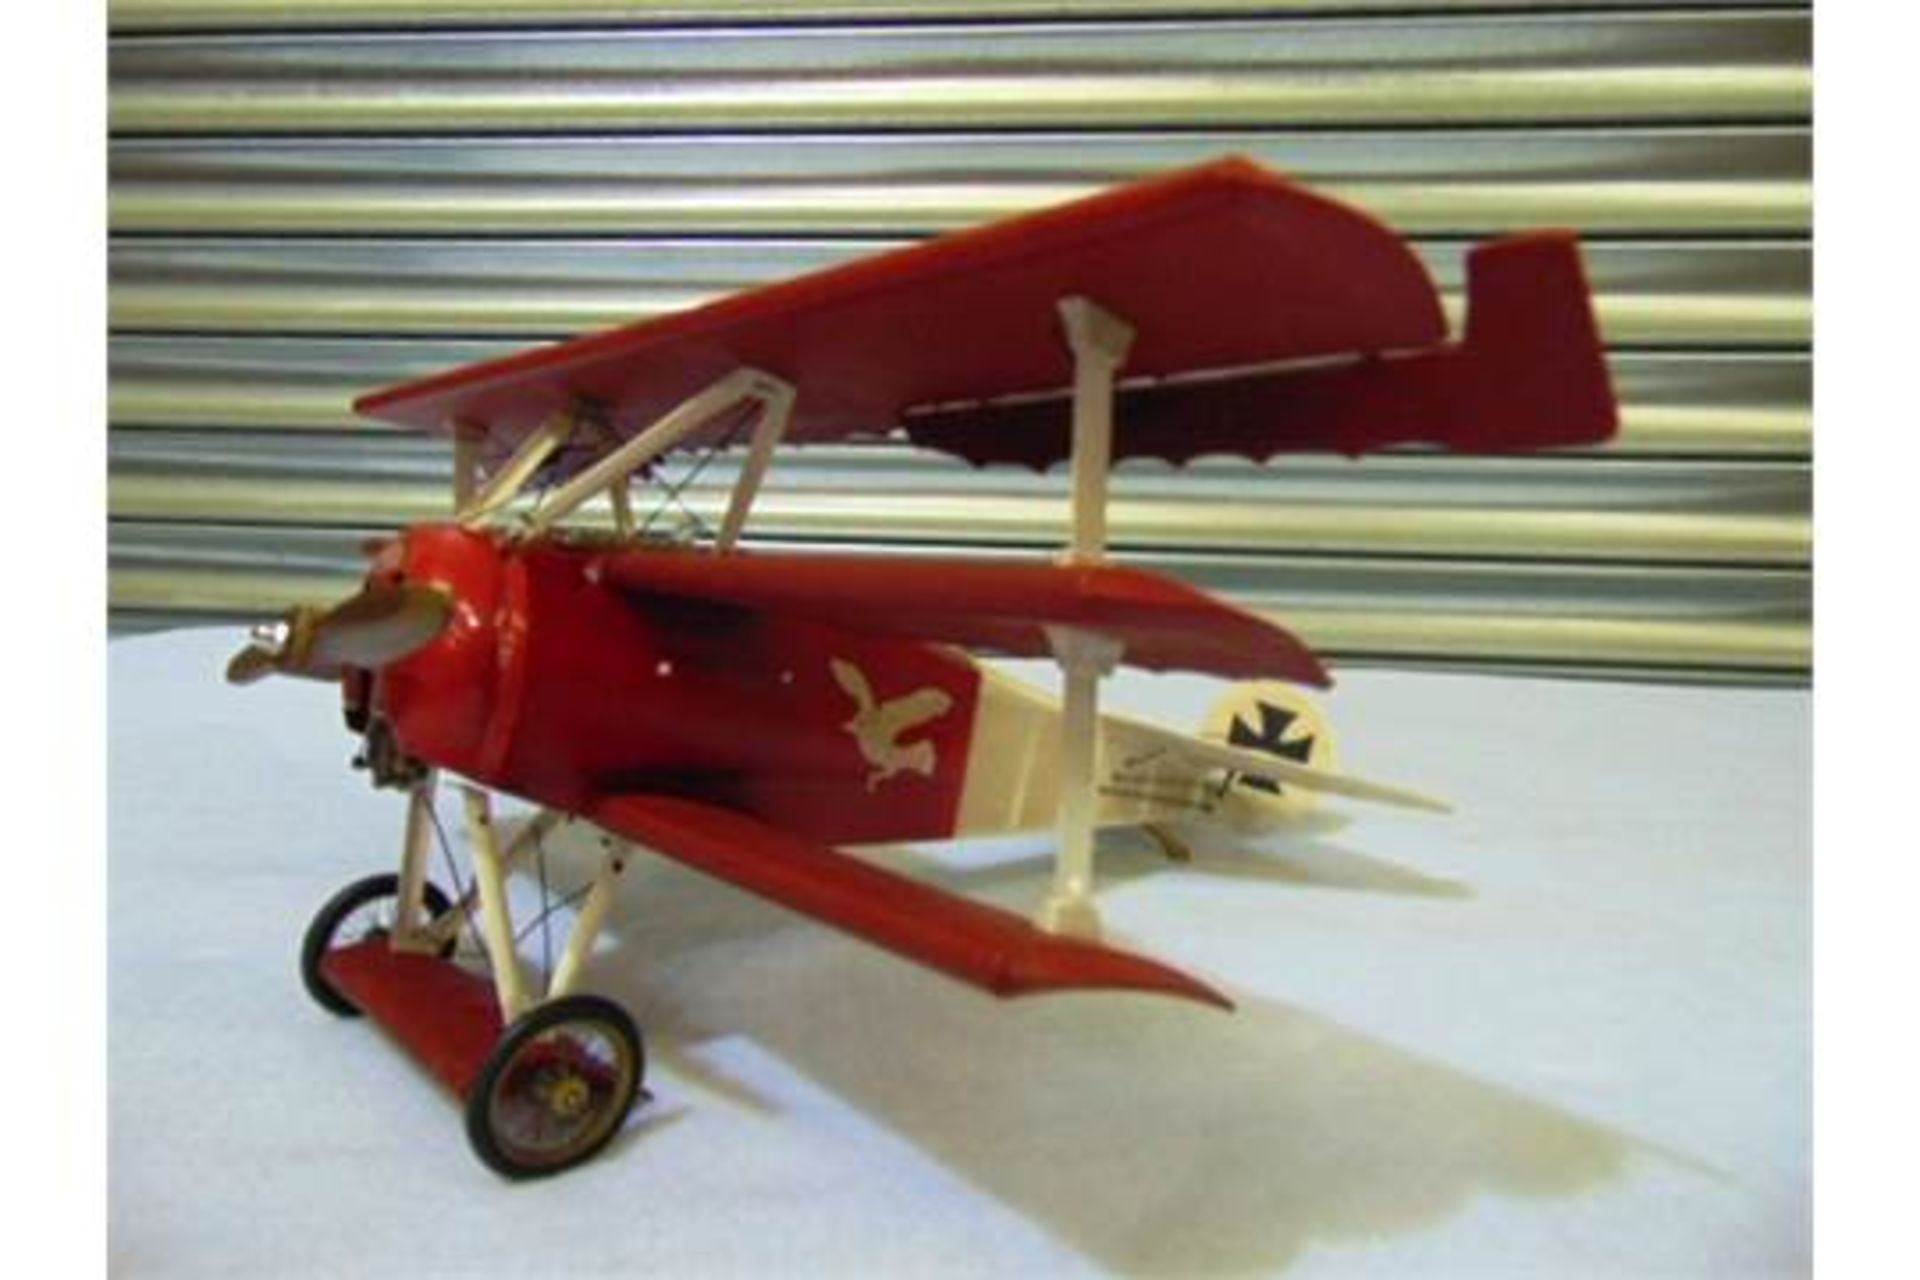 Legendary Red Baron's Fokker Triplane Detailed Model - Bild 2 aus 8